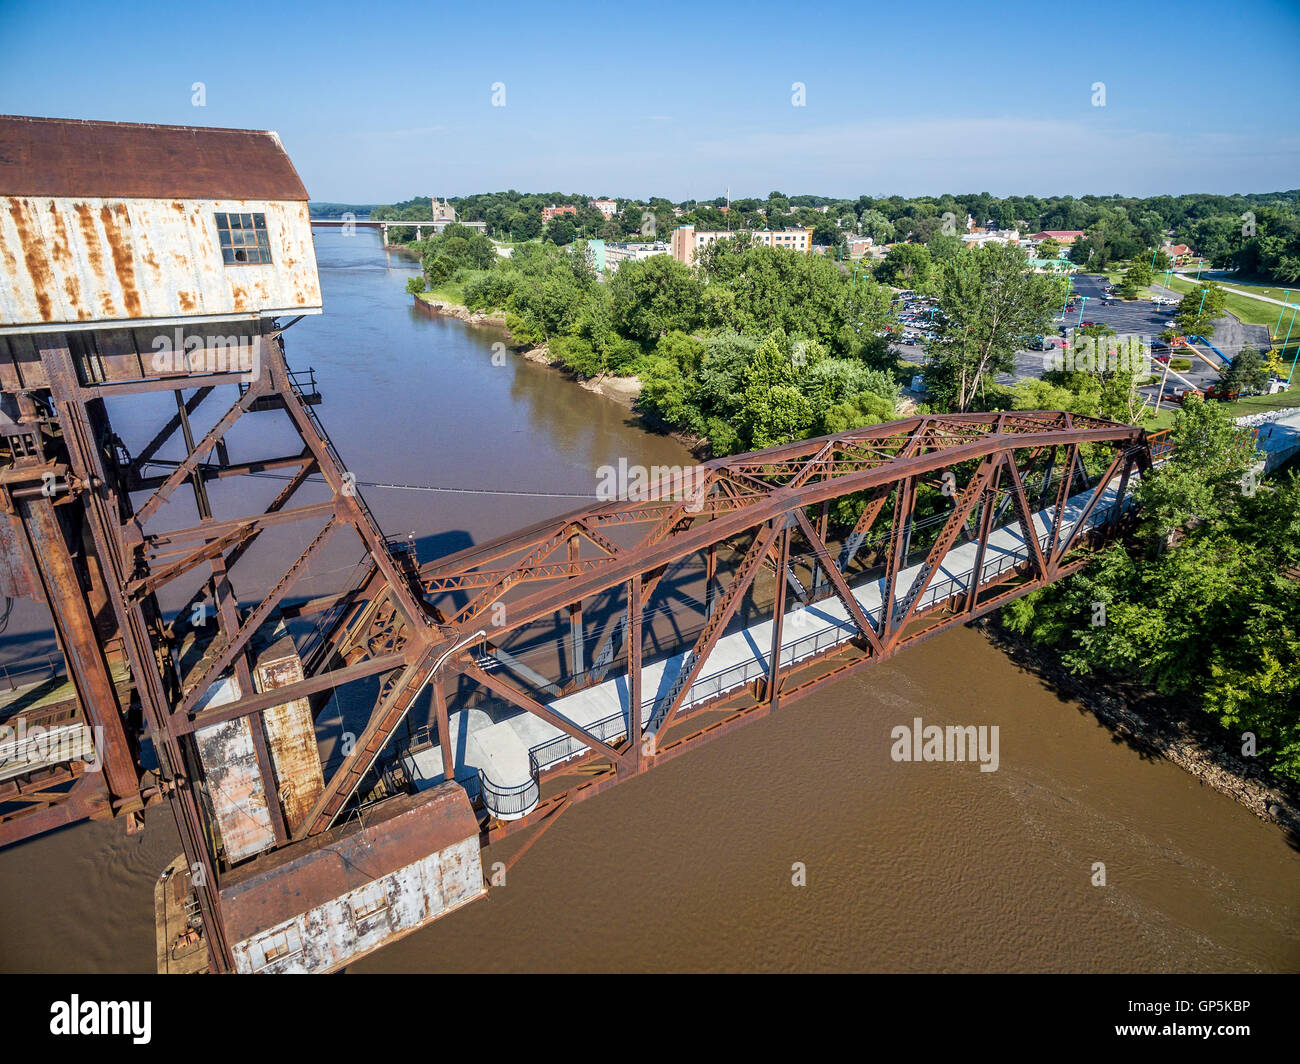 Chemin de fer historique Katy Pont sur la rivière Missouri à Boonville avec un nouveau poste d'observation - vue aérienne Banque D'Images